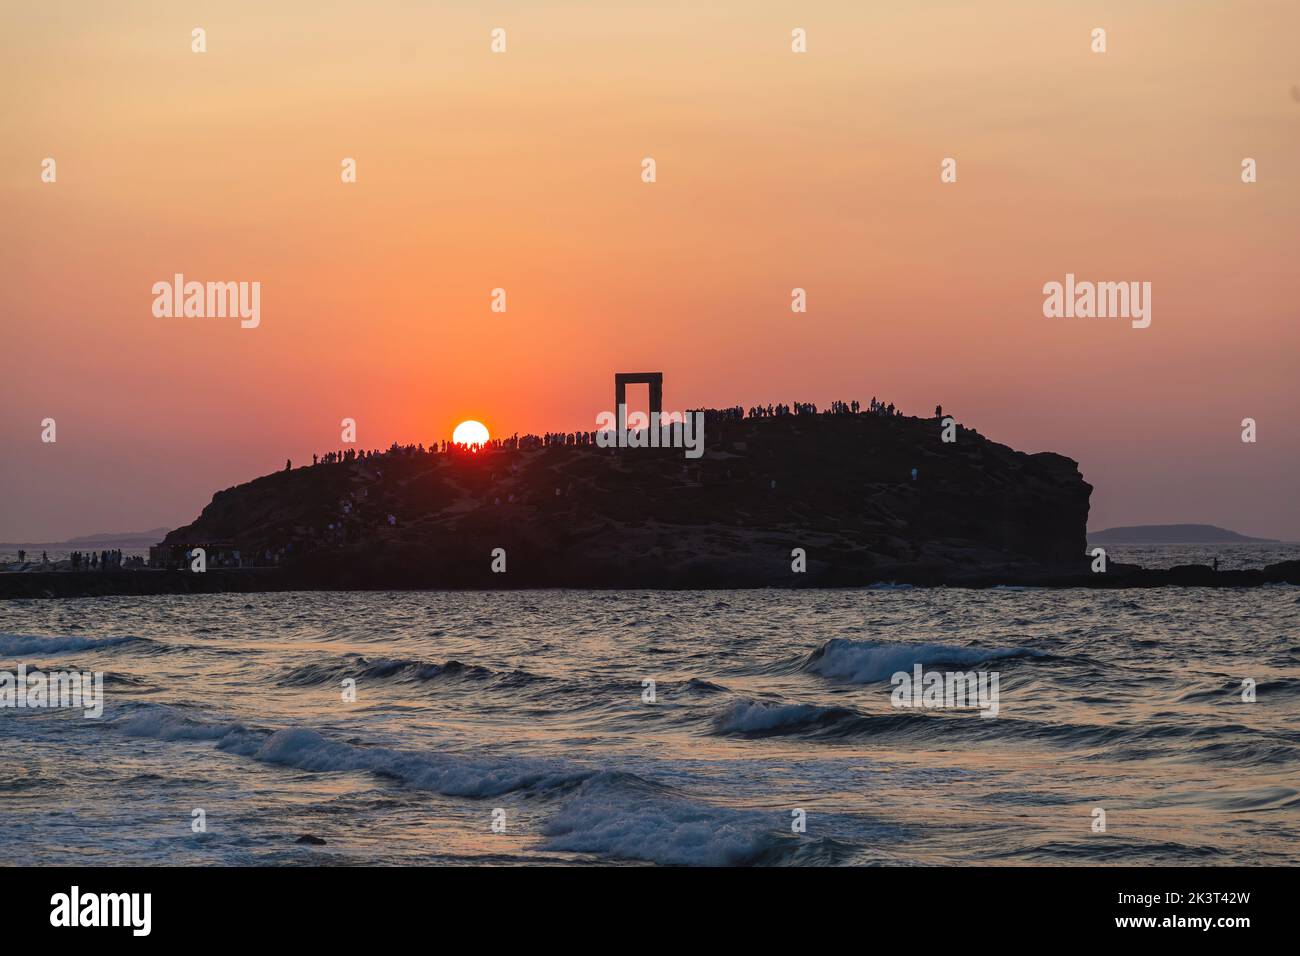 Île de Naxos, coucher de soleil sur le Temple d'Apollon, Cyclades destination Grèce. Les gens admirent le coucher de soleil depuis l'îlot de Palatia. Mer ondulée ciel coloré Banque D'Images